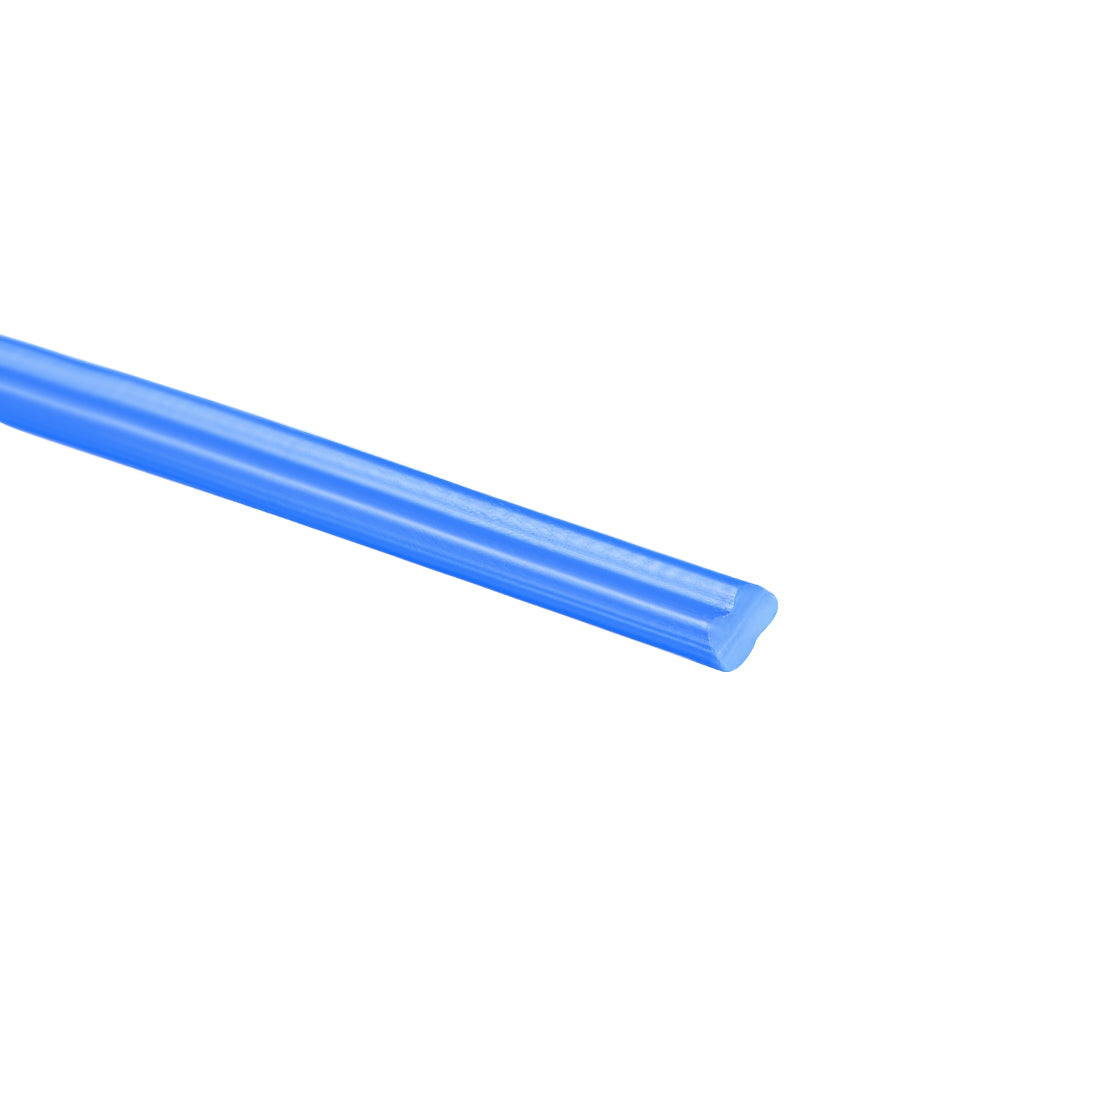 uxcell Uxcell PE Plastic Welding Rods,5mm Wide,3mm Thickness,1 Meter,Welding Stick,for Plastic Welder Gun/Hot Air Gun,Blue,6pcs